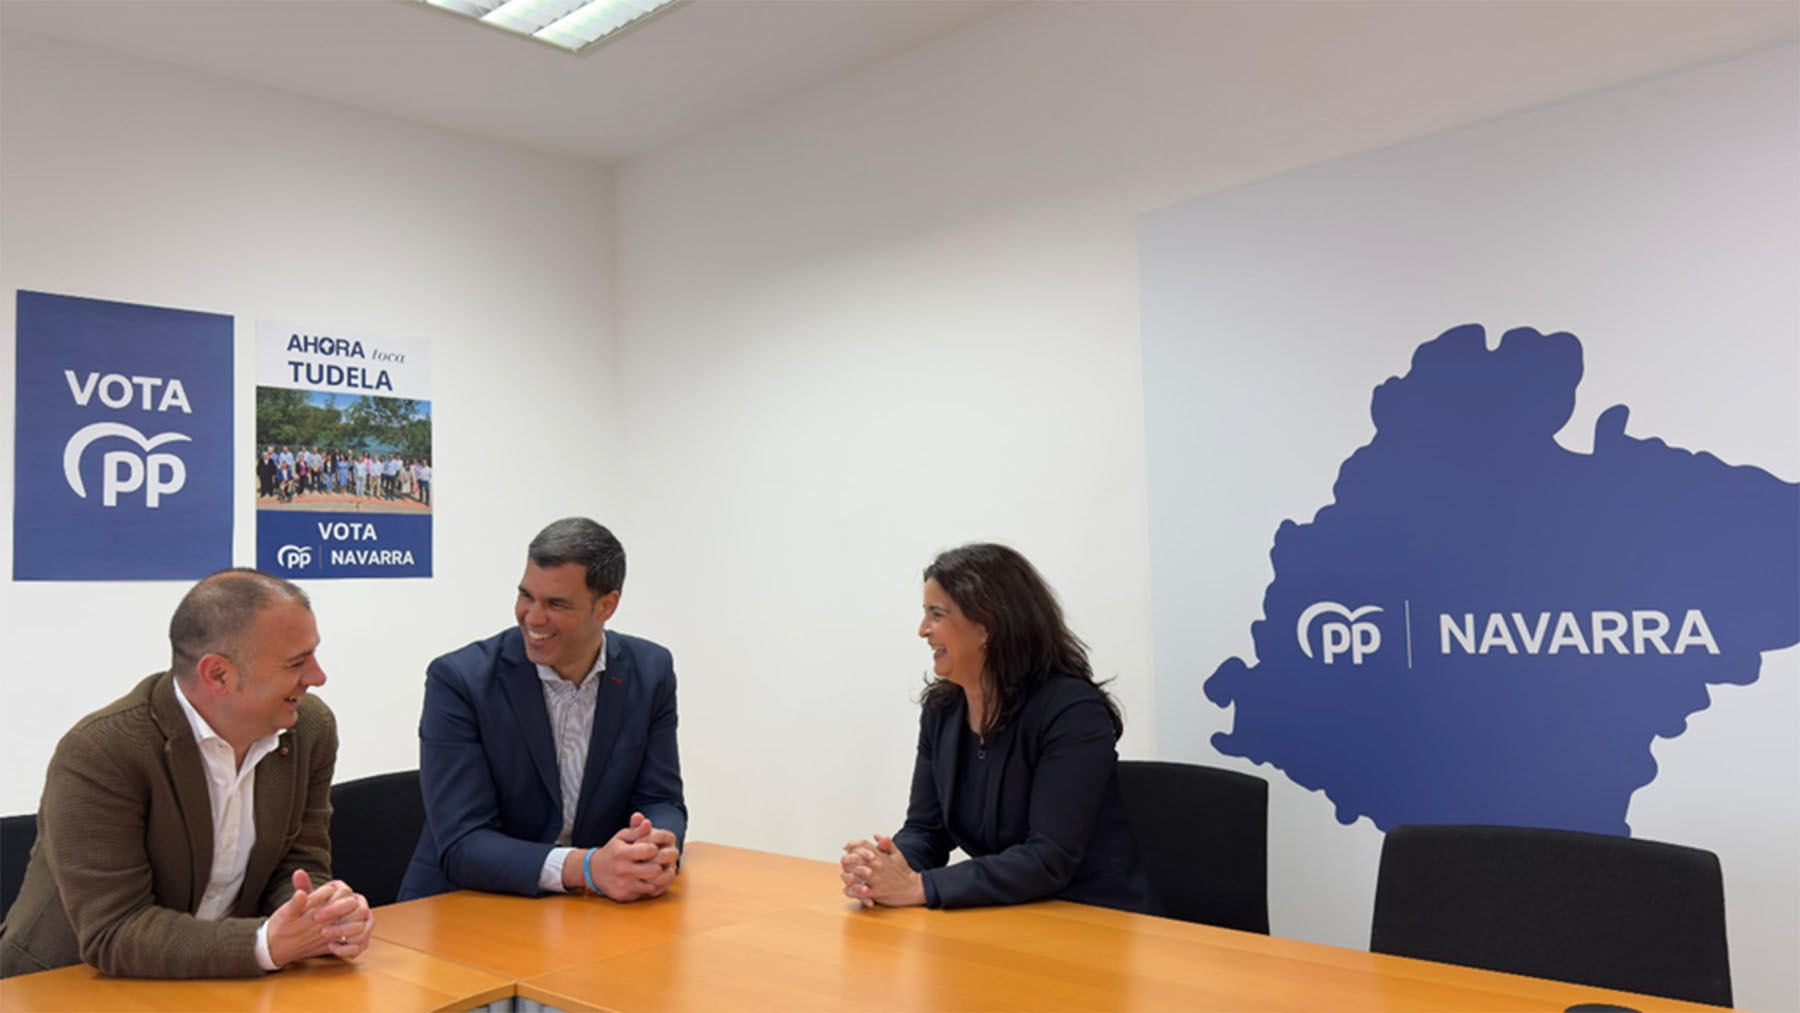 Dos políticos acaban de firmar su afiliación al PP de Navarra